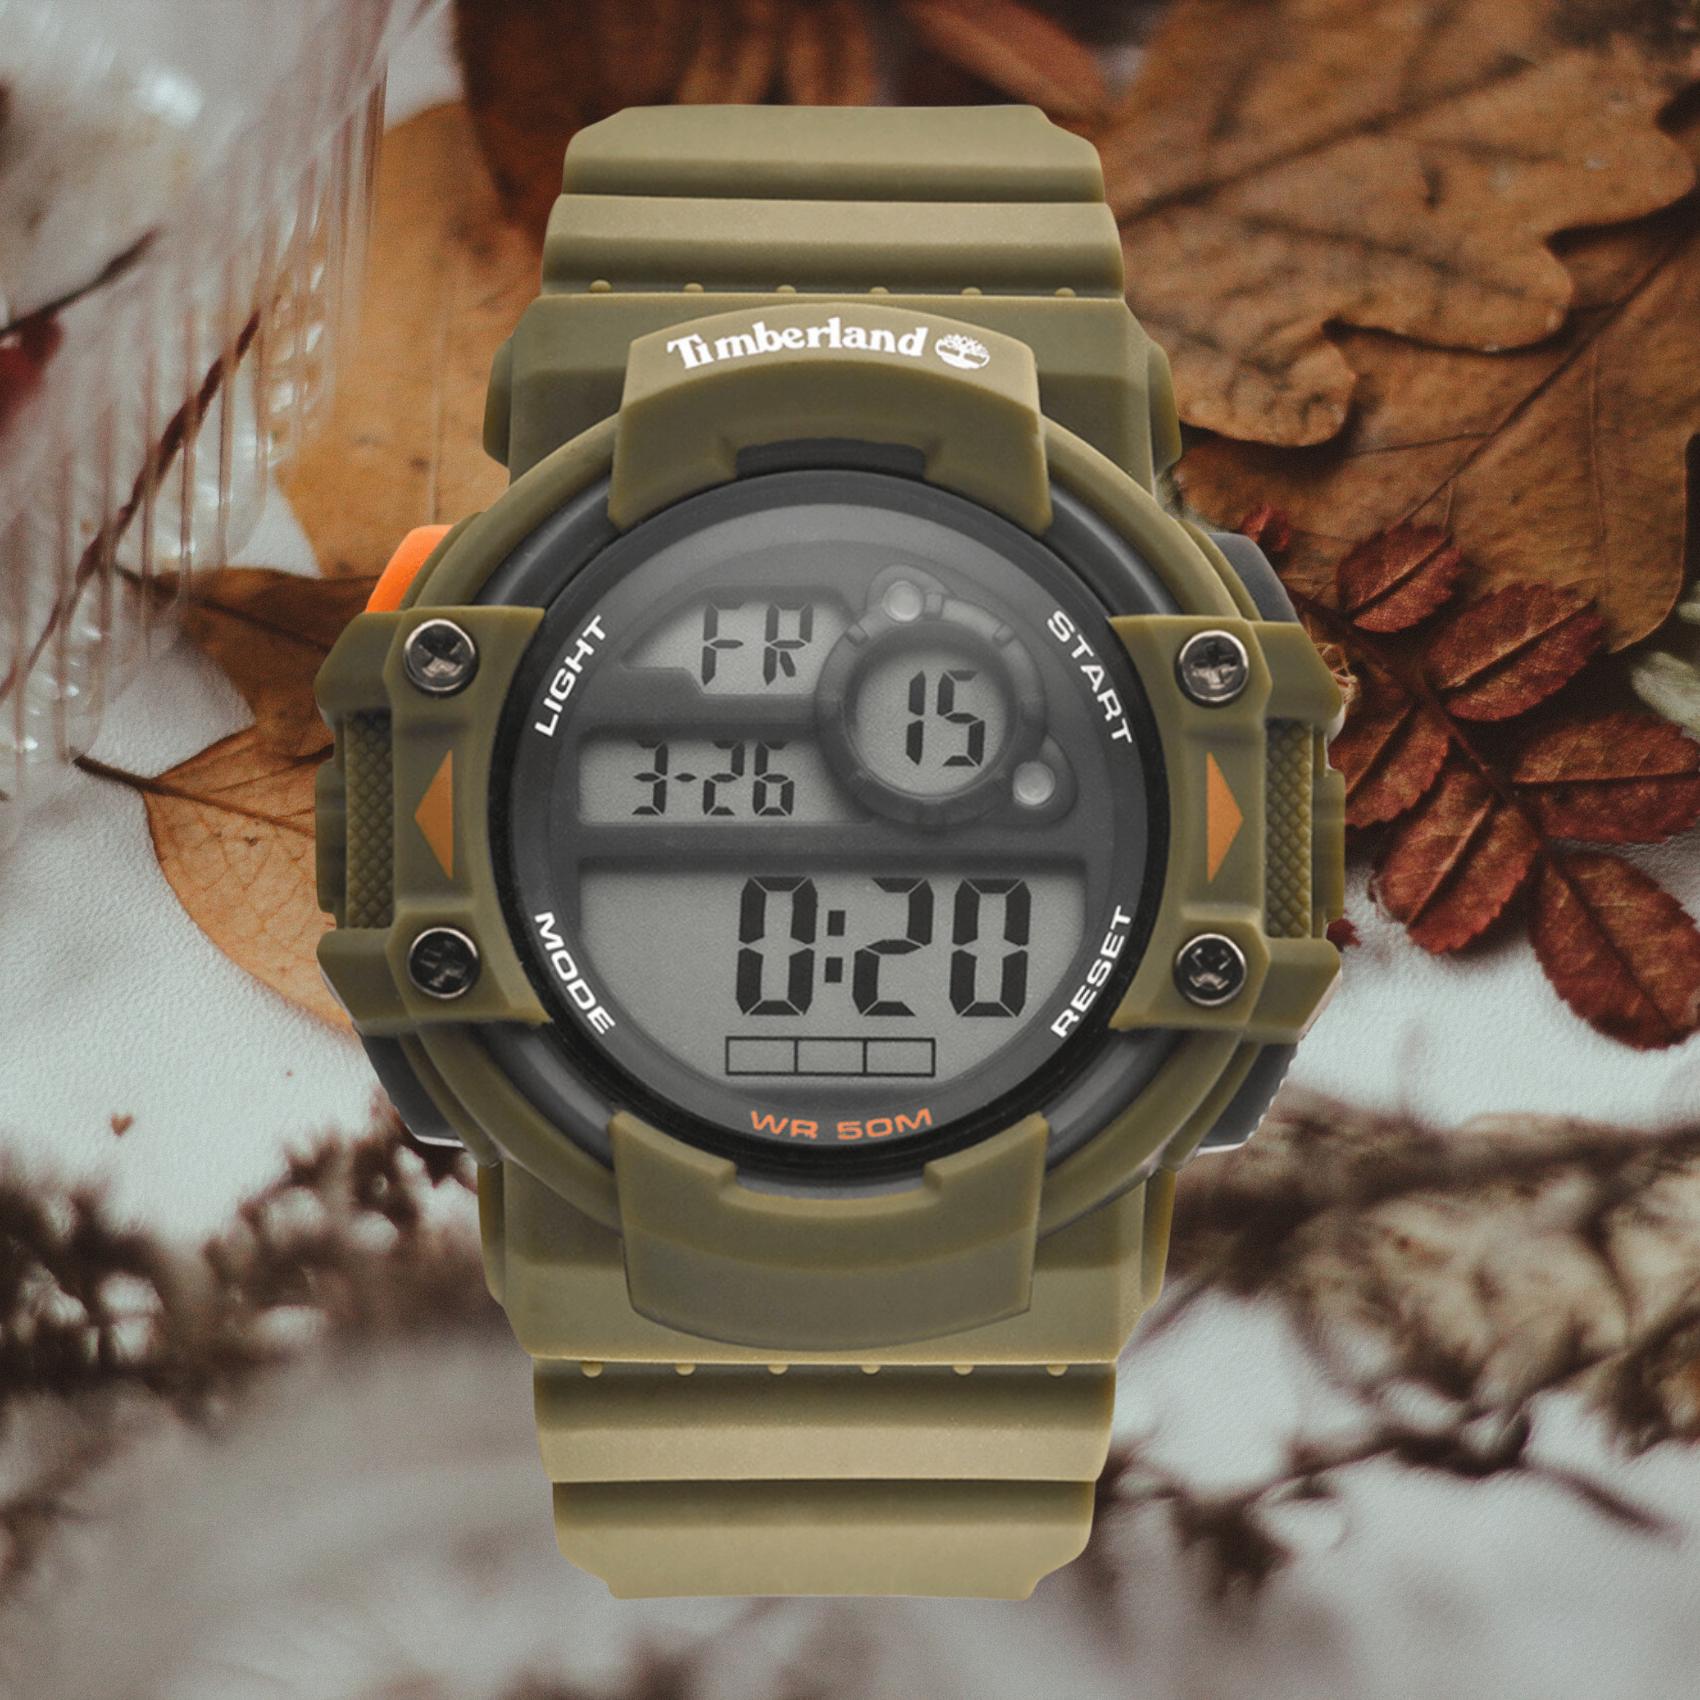 Ανδρικό ρολόι Timberland Mackworth TDWGP2101303 με χακί καουτσούκ λουράκι και ψηφιακό καντράν διαμέτρου 54mm.